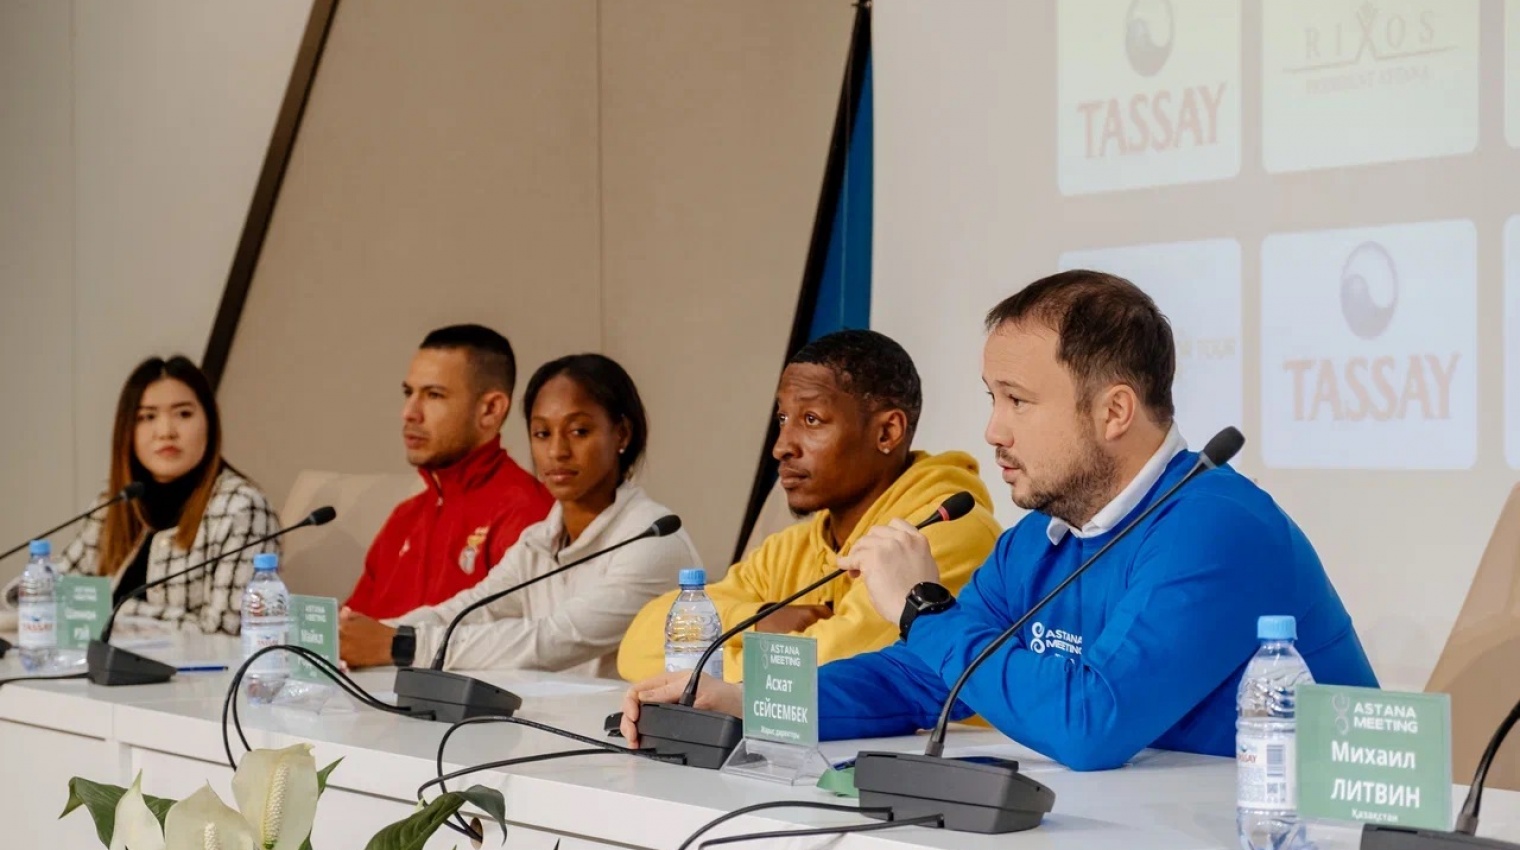 22-қаңтар күні «QAZAQSTAN» жеңіл атлетикалық спорт кешенінде жеңіл атлетикадан күміс деңгейдегі Astana Meeting World Indoor Tour халықаралық турнирінің пресс-конференциясы өтті.